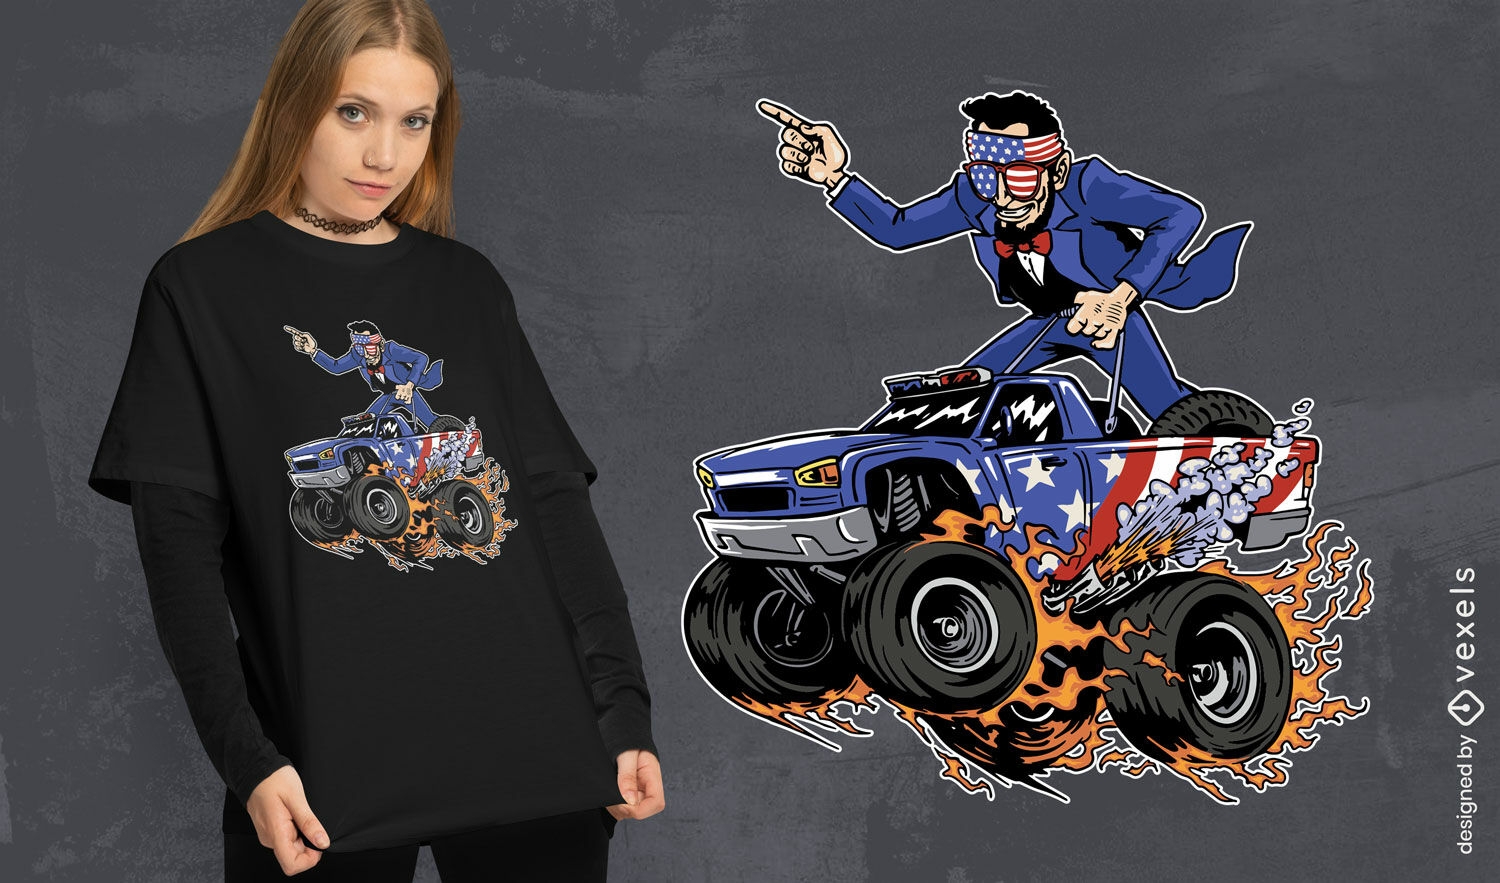 Abraham Liconln über ein Monstertruck-T-Shirt-Design